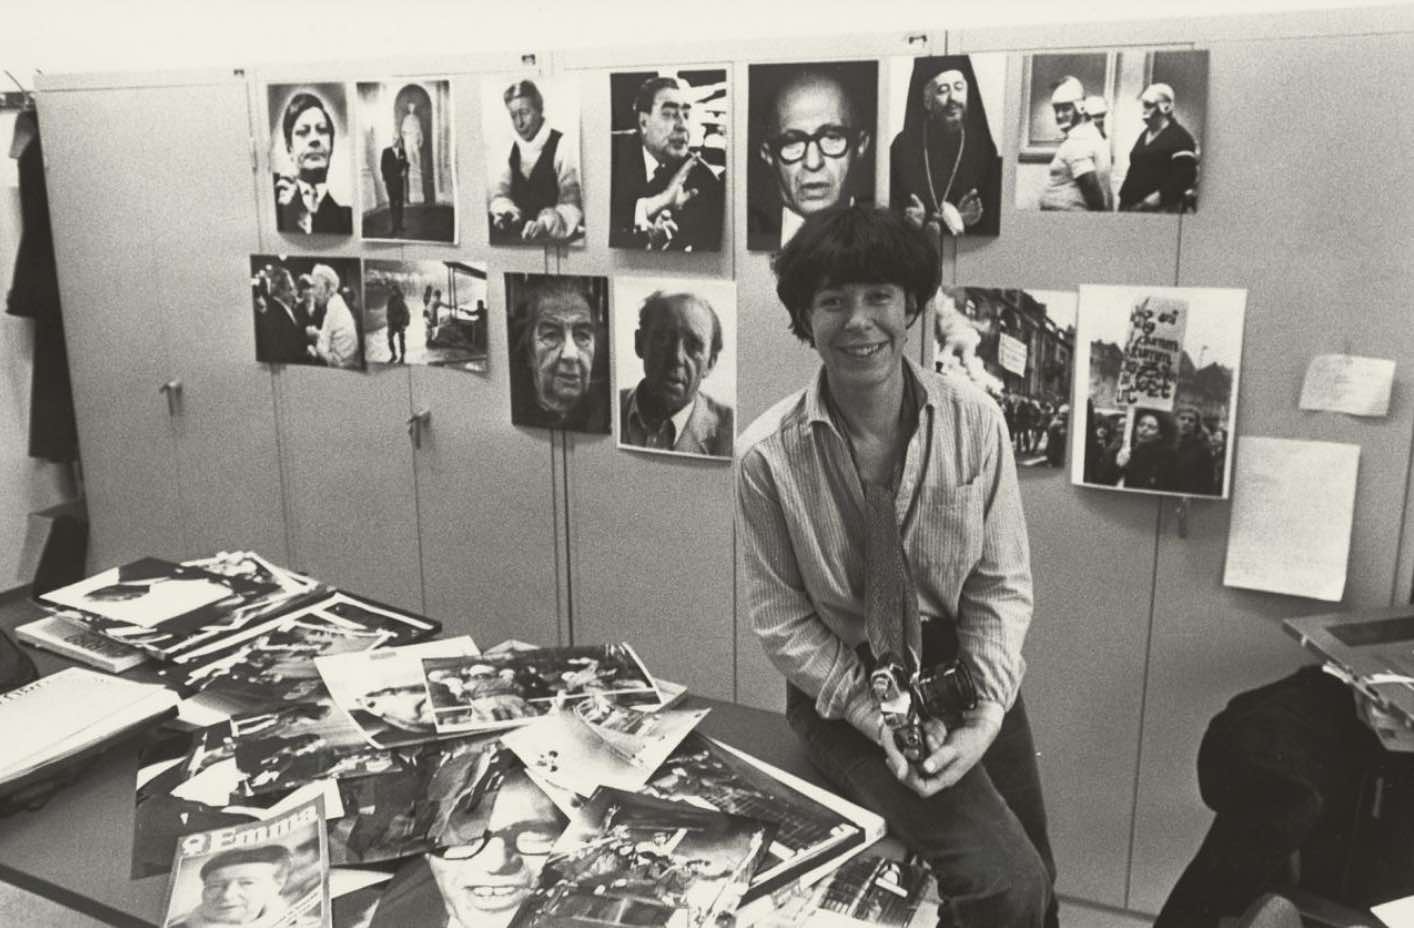 Schwarz-weiß Fotografie, auf der eine Frau mit kurzen dunklen Haaren auf einem Tisch sitzt mit vielen Fotos und Magazinen, im Hintergrund Portäts an der Wand